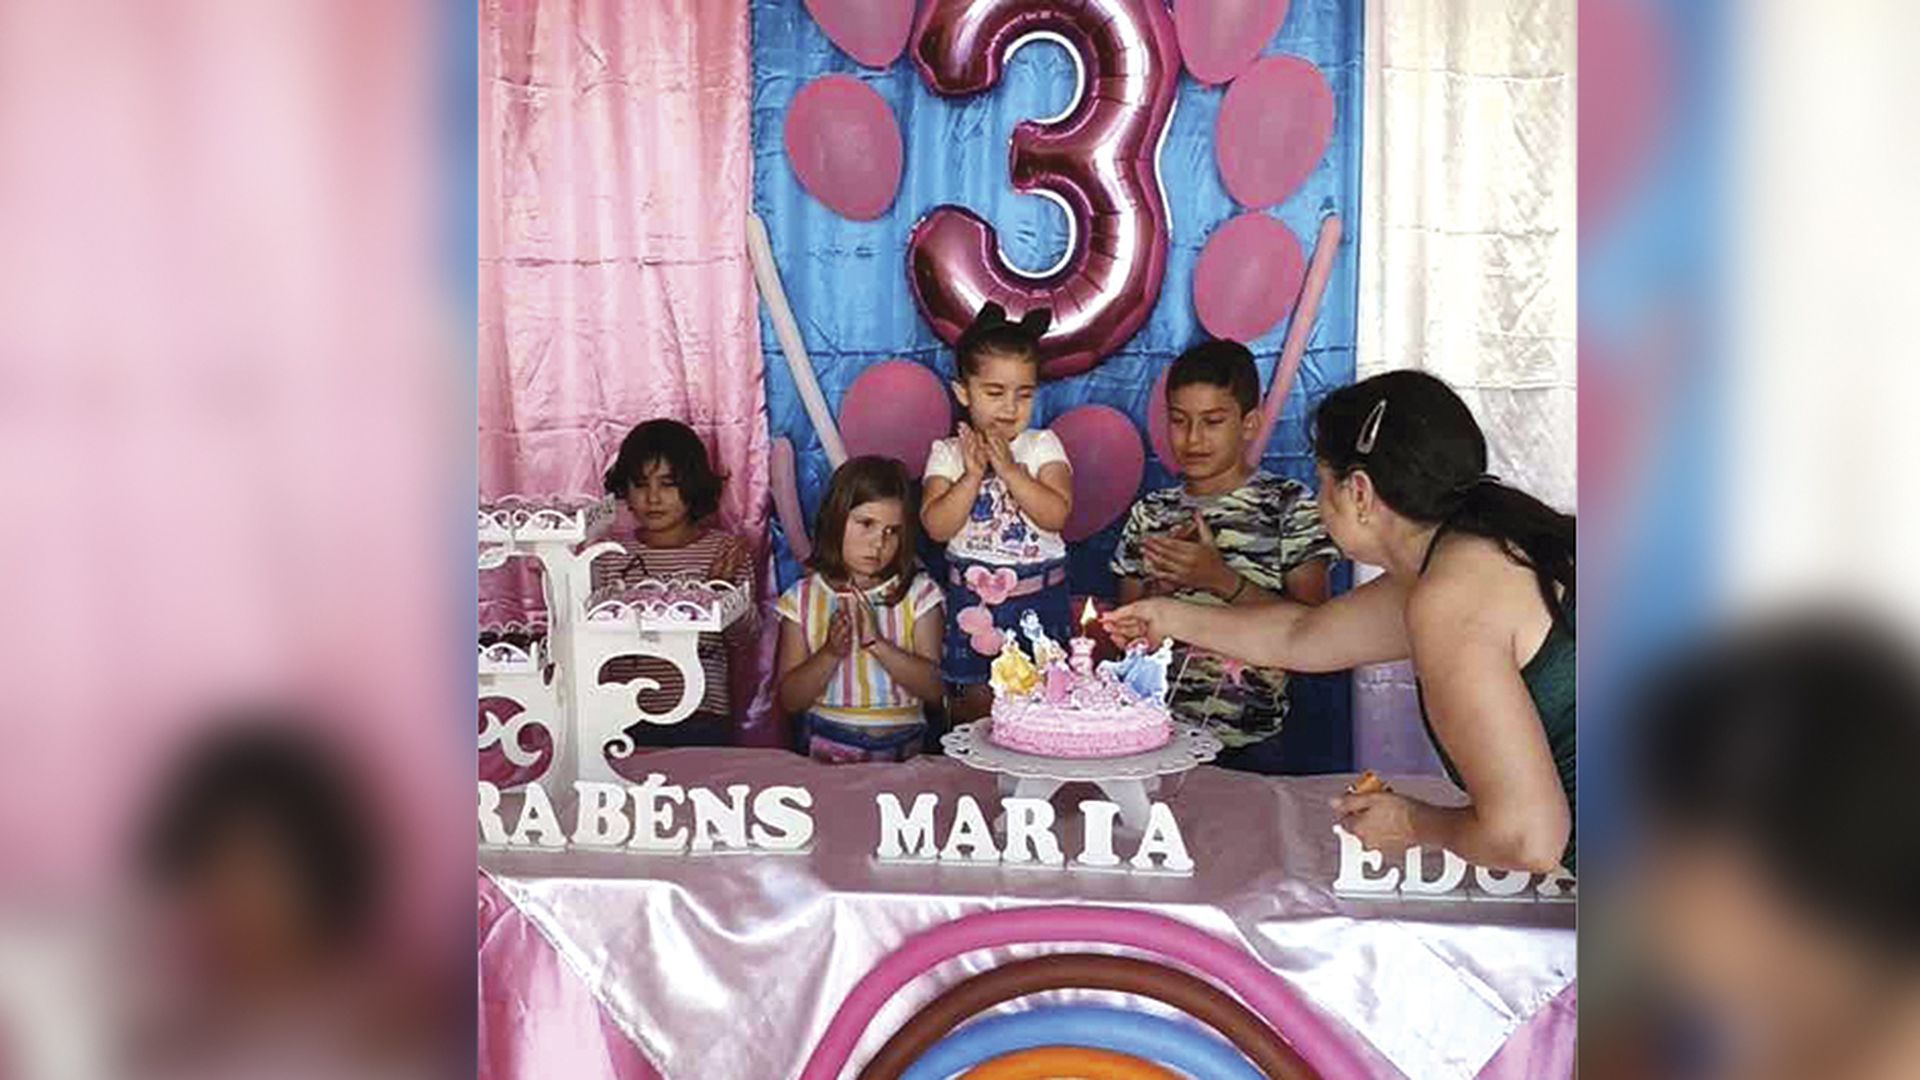 Una niña apagó las velas del cumpleaños de su hermanita y su cruel  travesura se volvió viral - Infobae